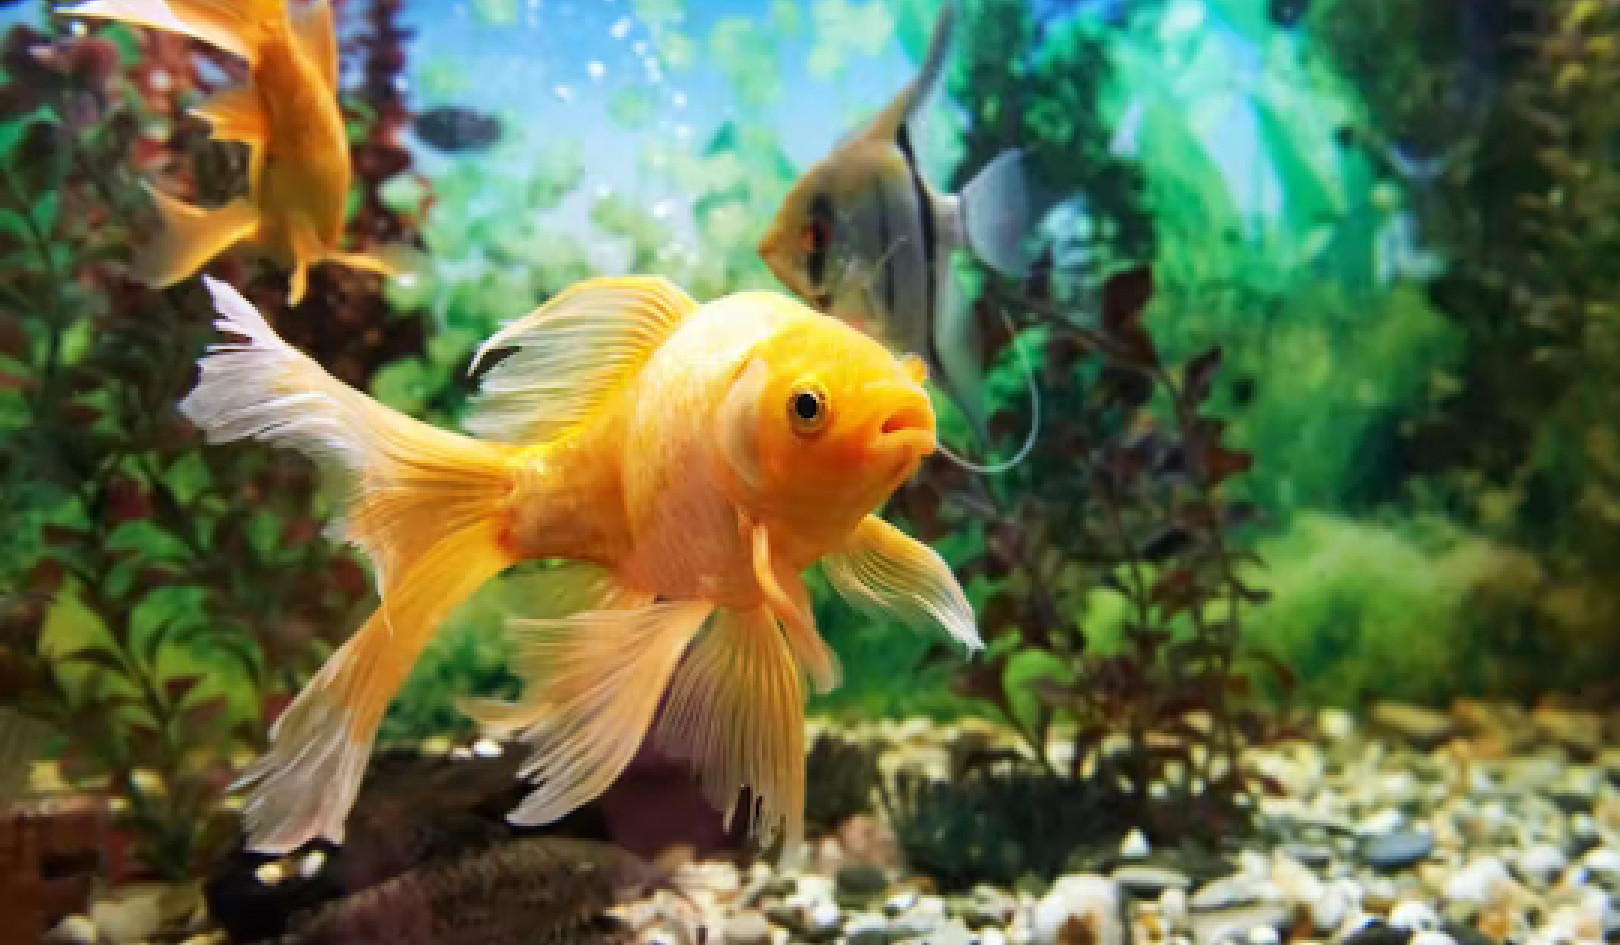 Os peixes do seu aquário estão felizes? Aqui está como você pode dizer